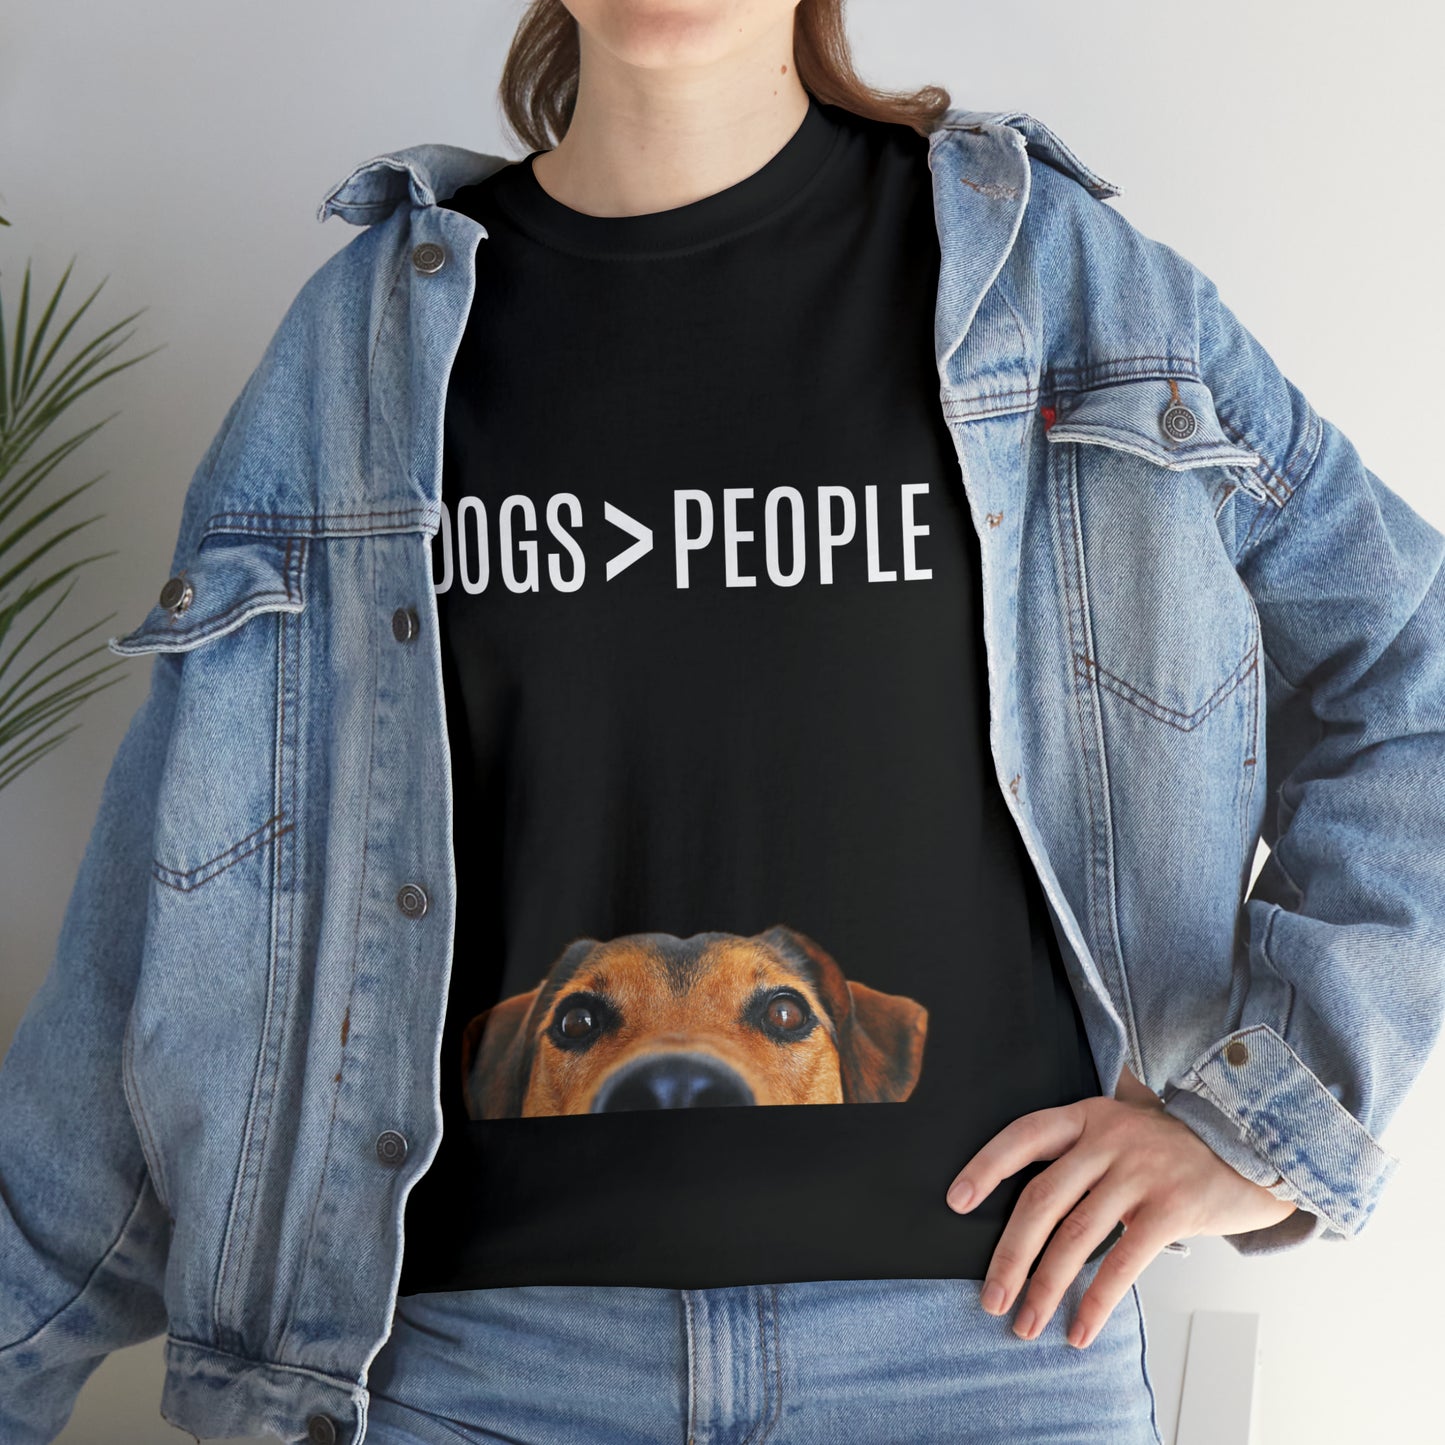 Dogs>People - Unisex Heavy Cotton Tee